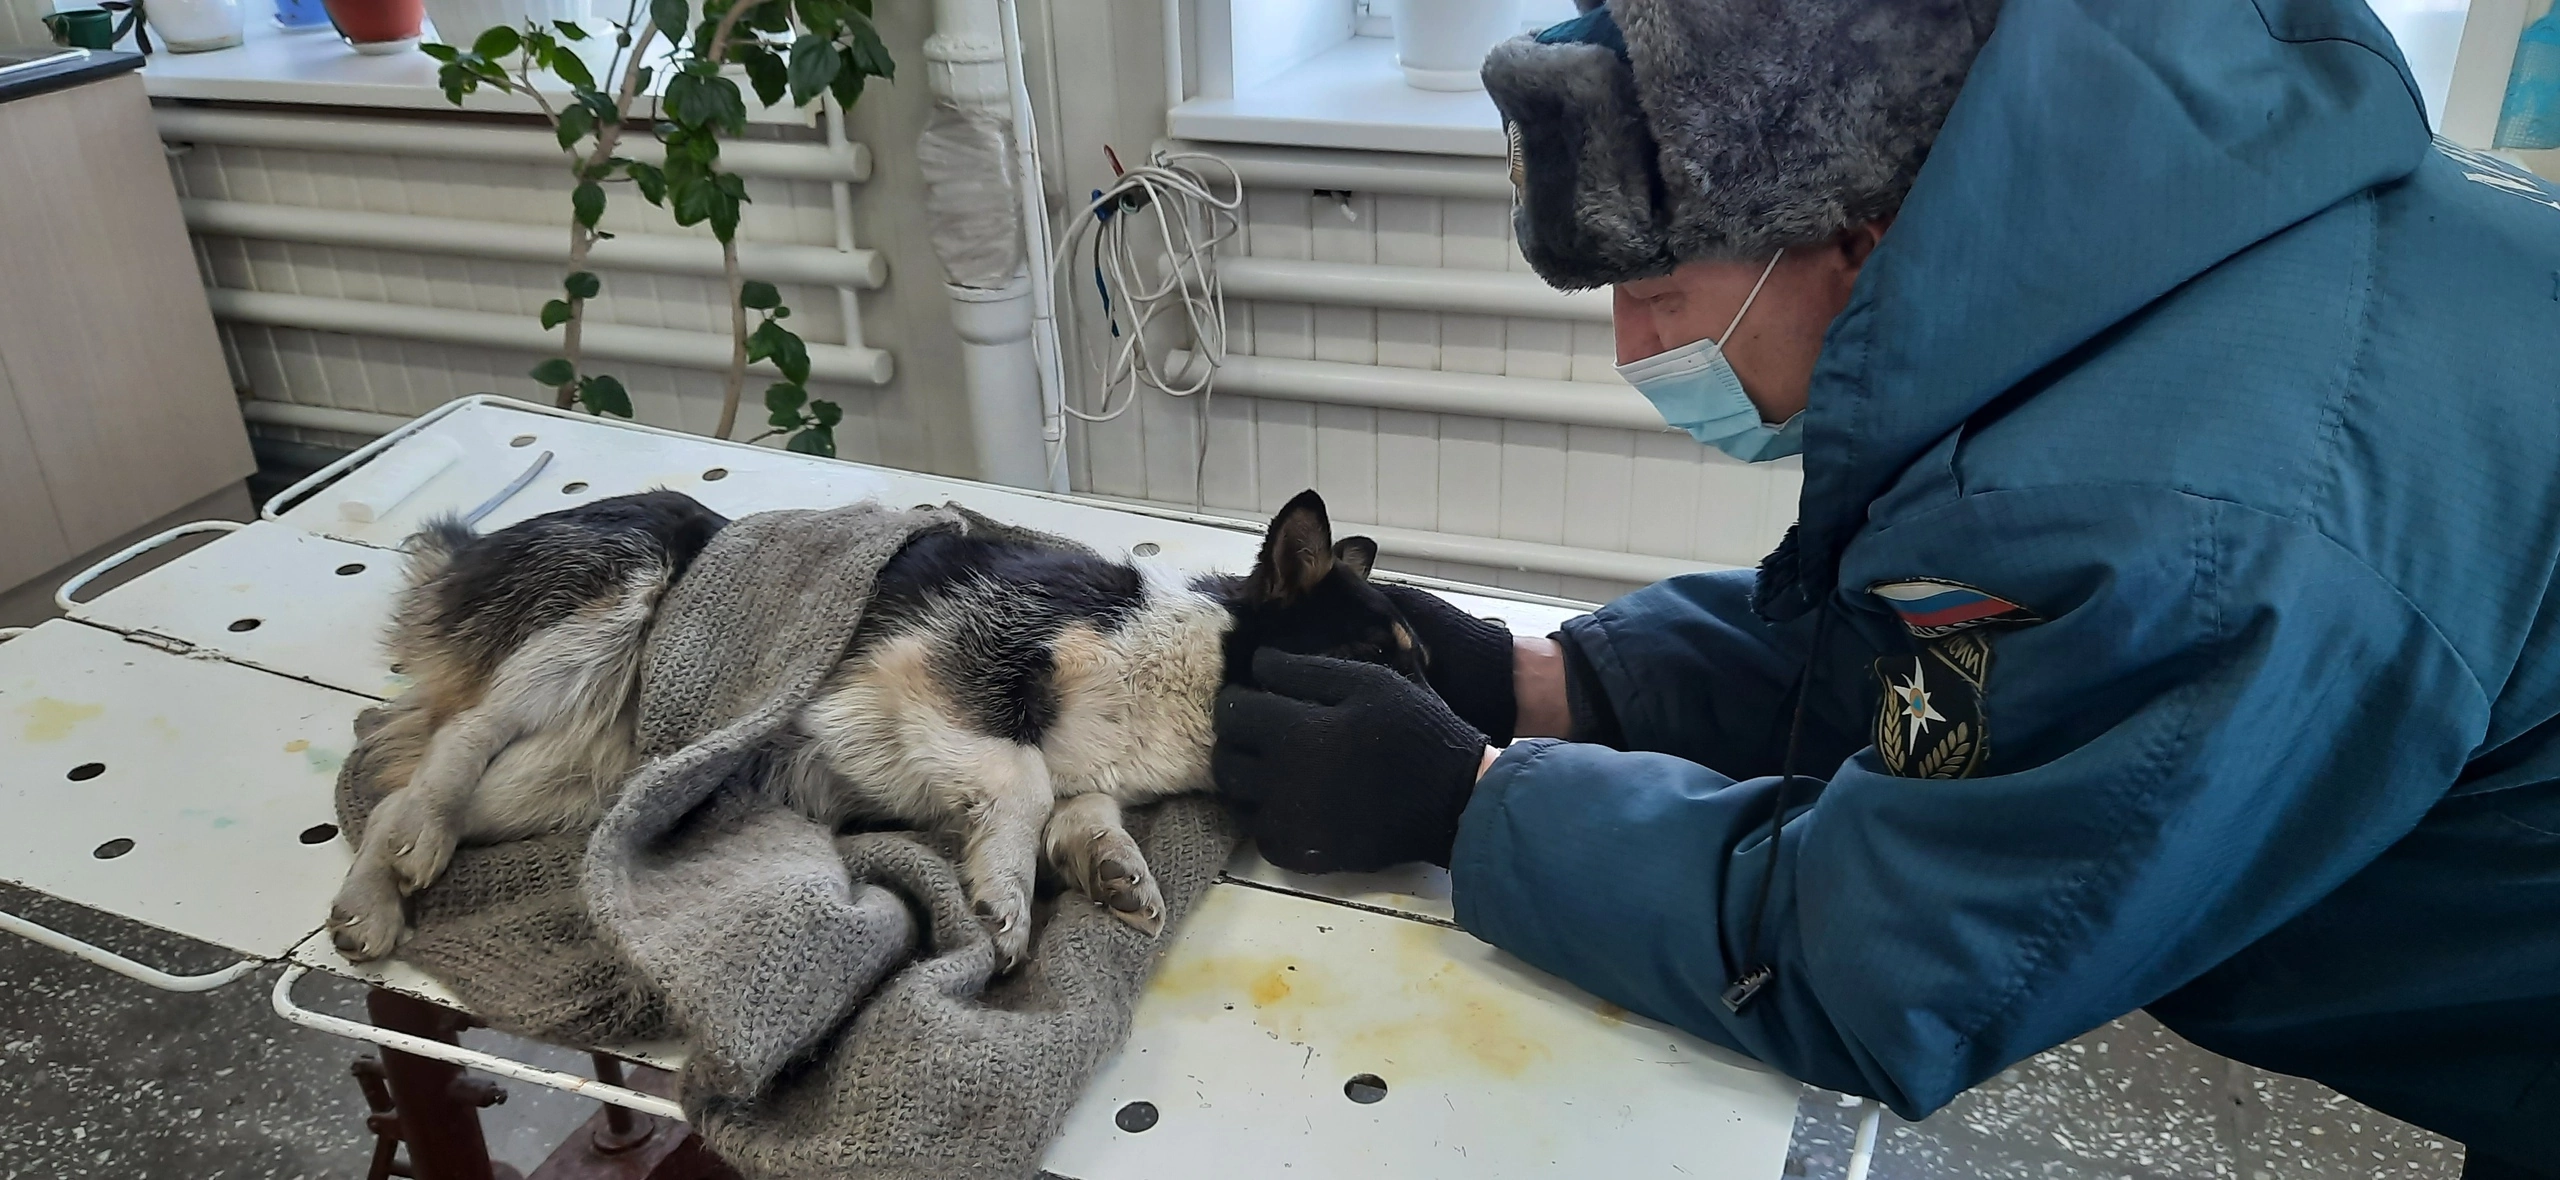 Алтайские спасатели выхаживают сбитую собаку